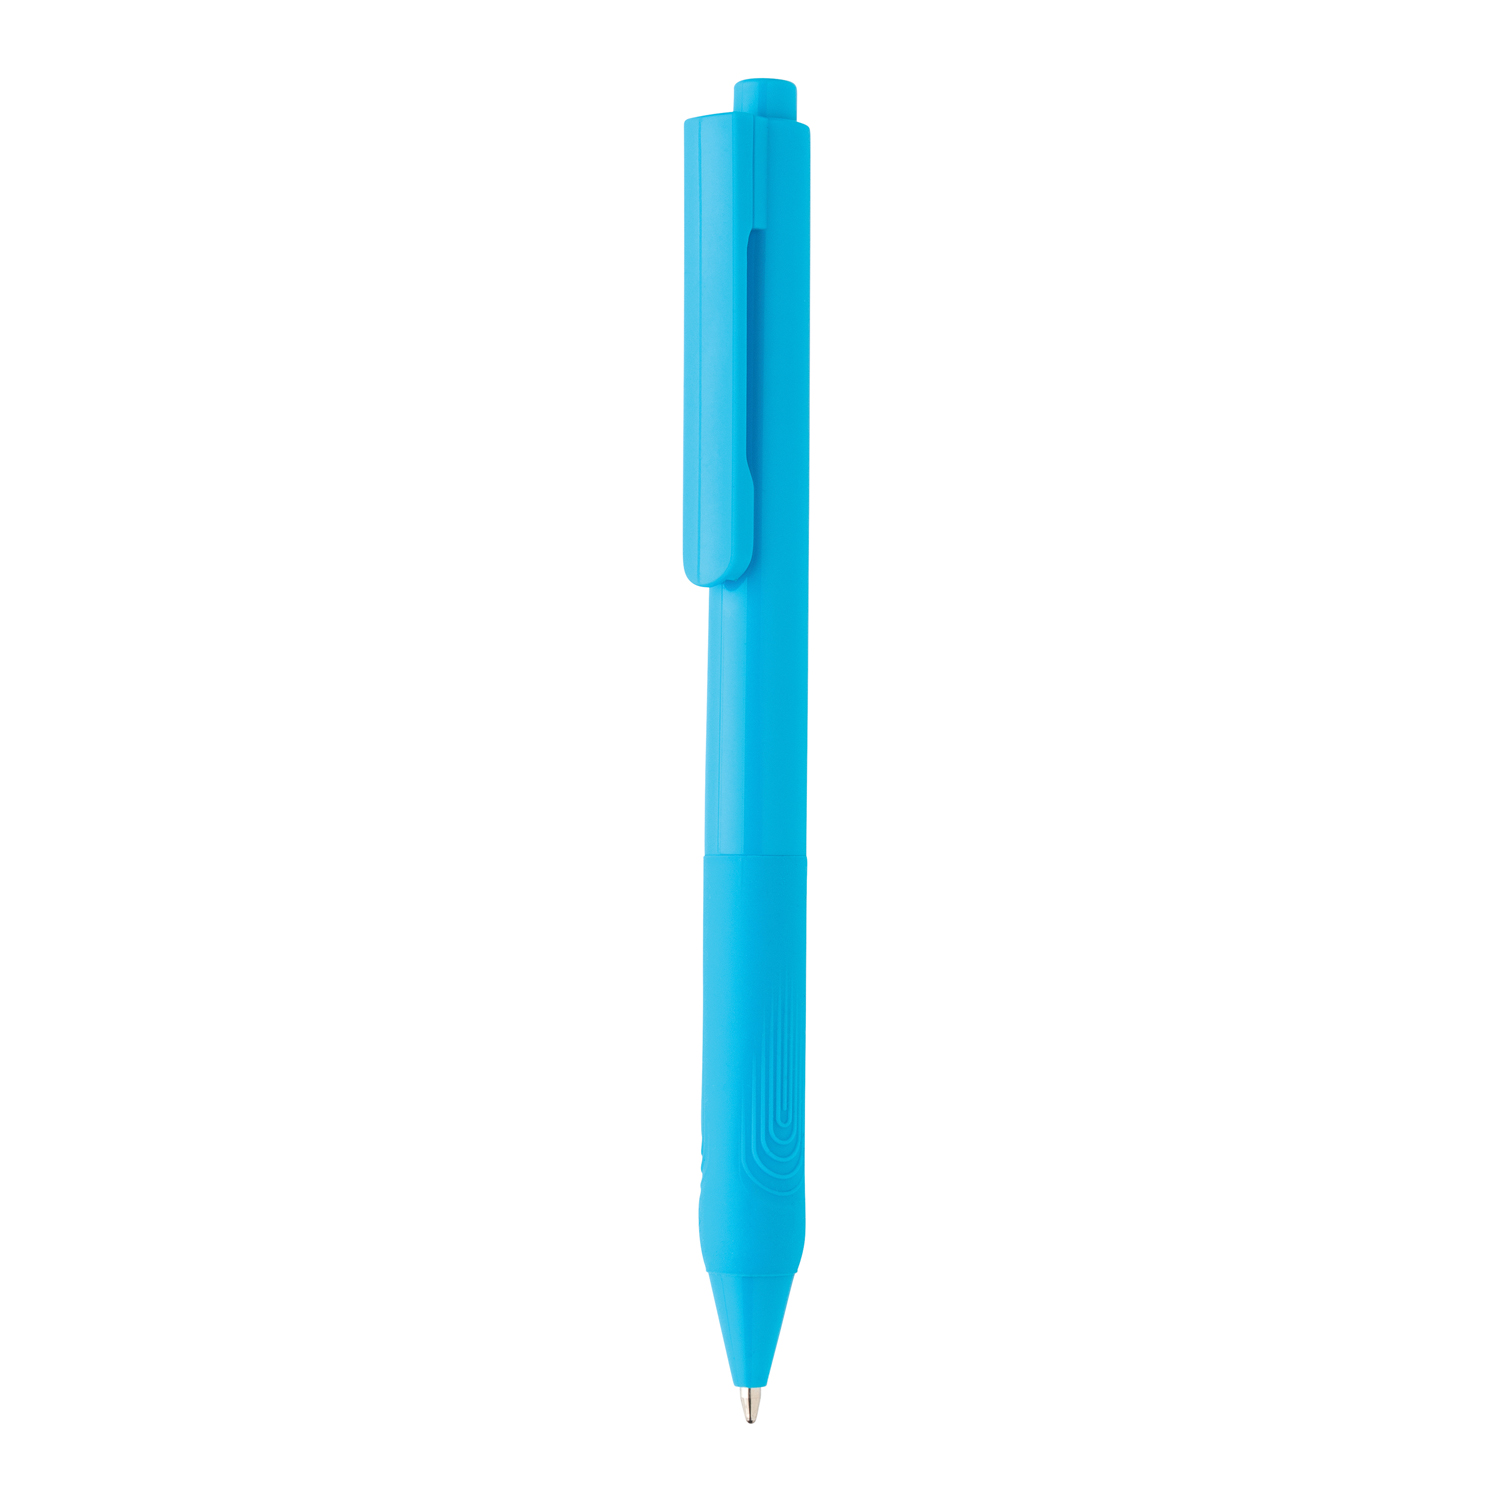 Артикул: XP610.825 — Ручка X9 с глянцевым корпусом и силиконовым грипом